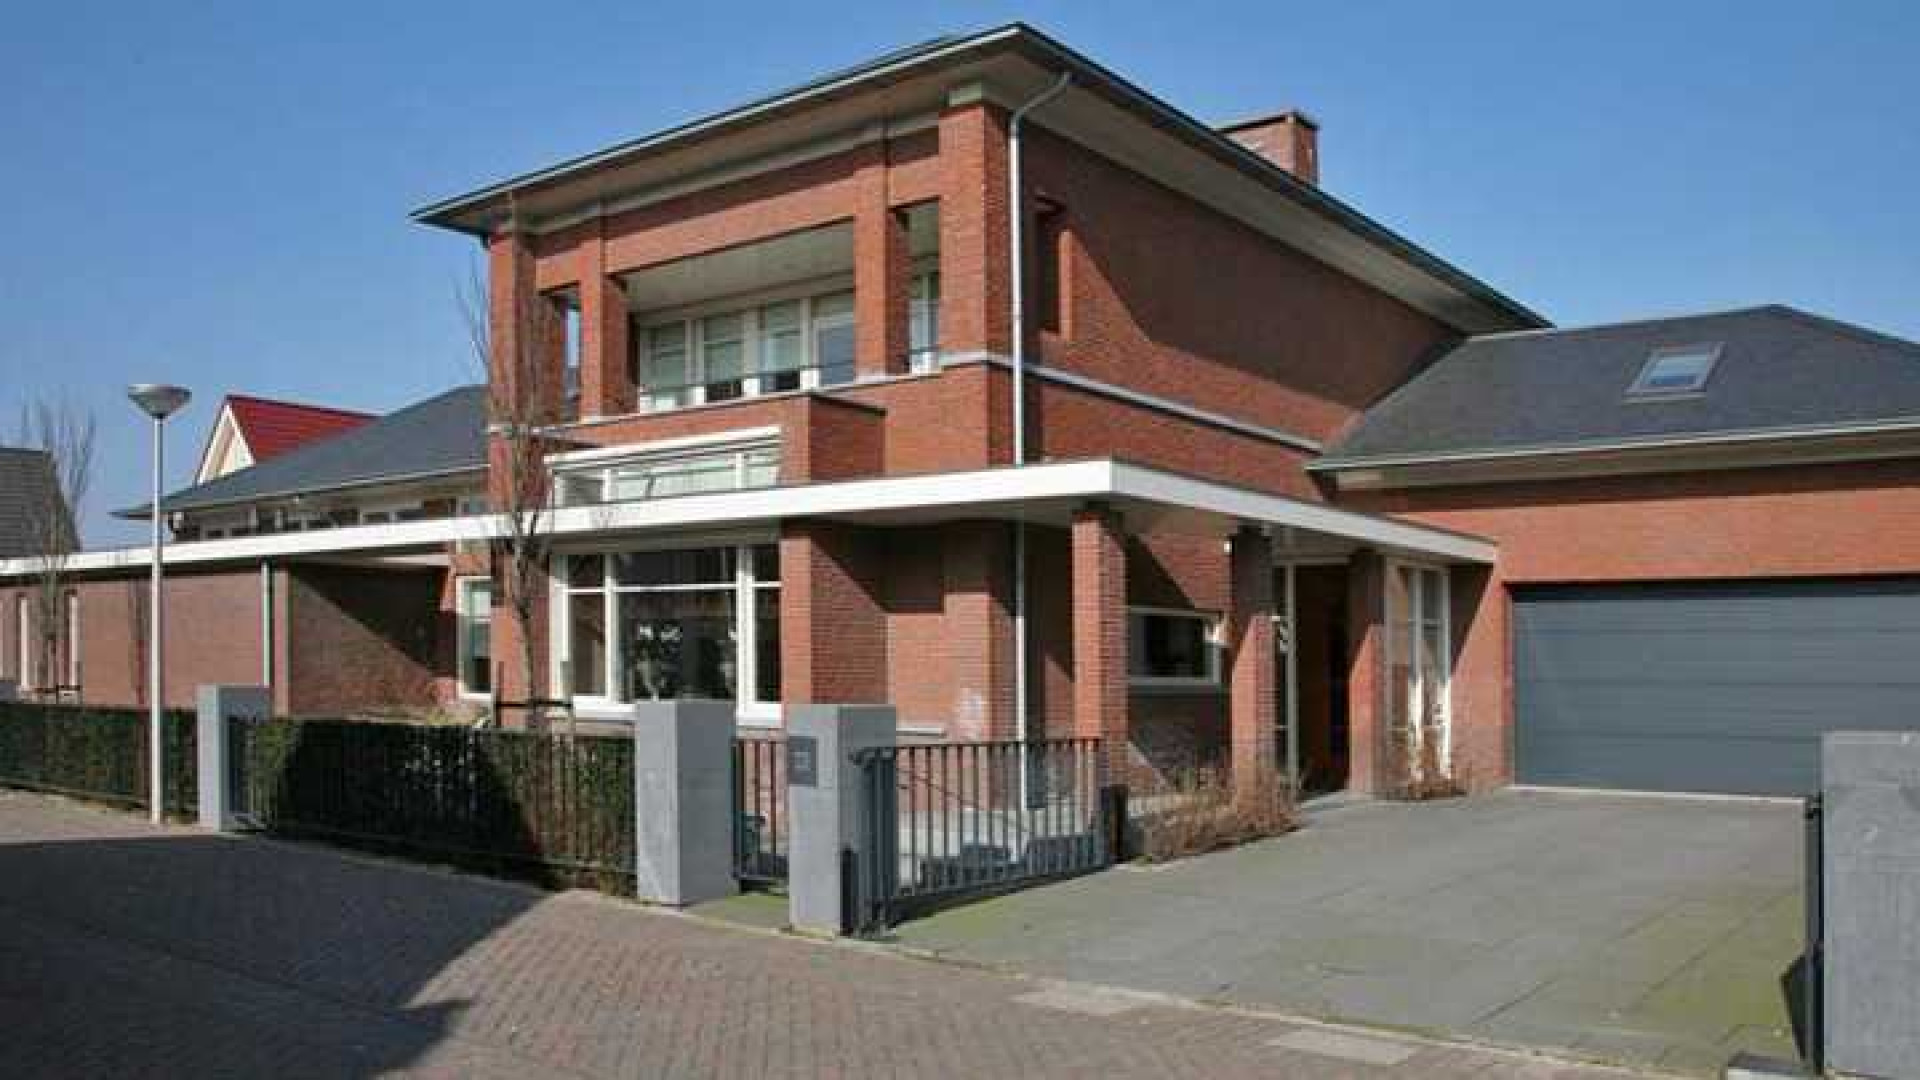 Villa Wesley en Yolanthe in Vleuten eindelijk verkocht. Zie foto's 1